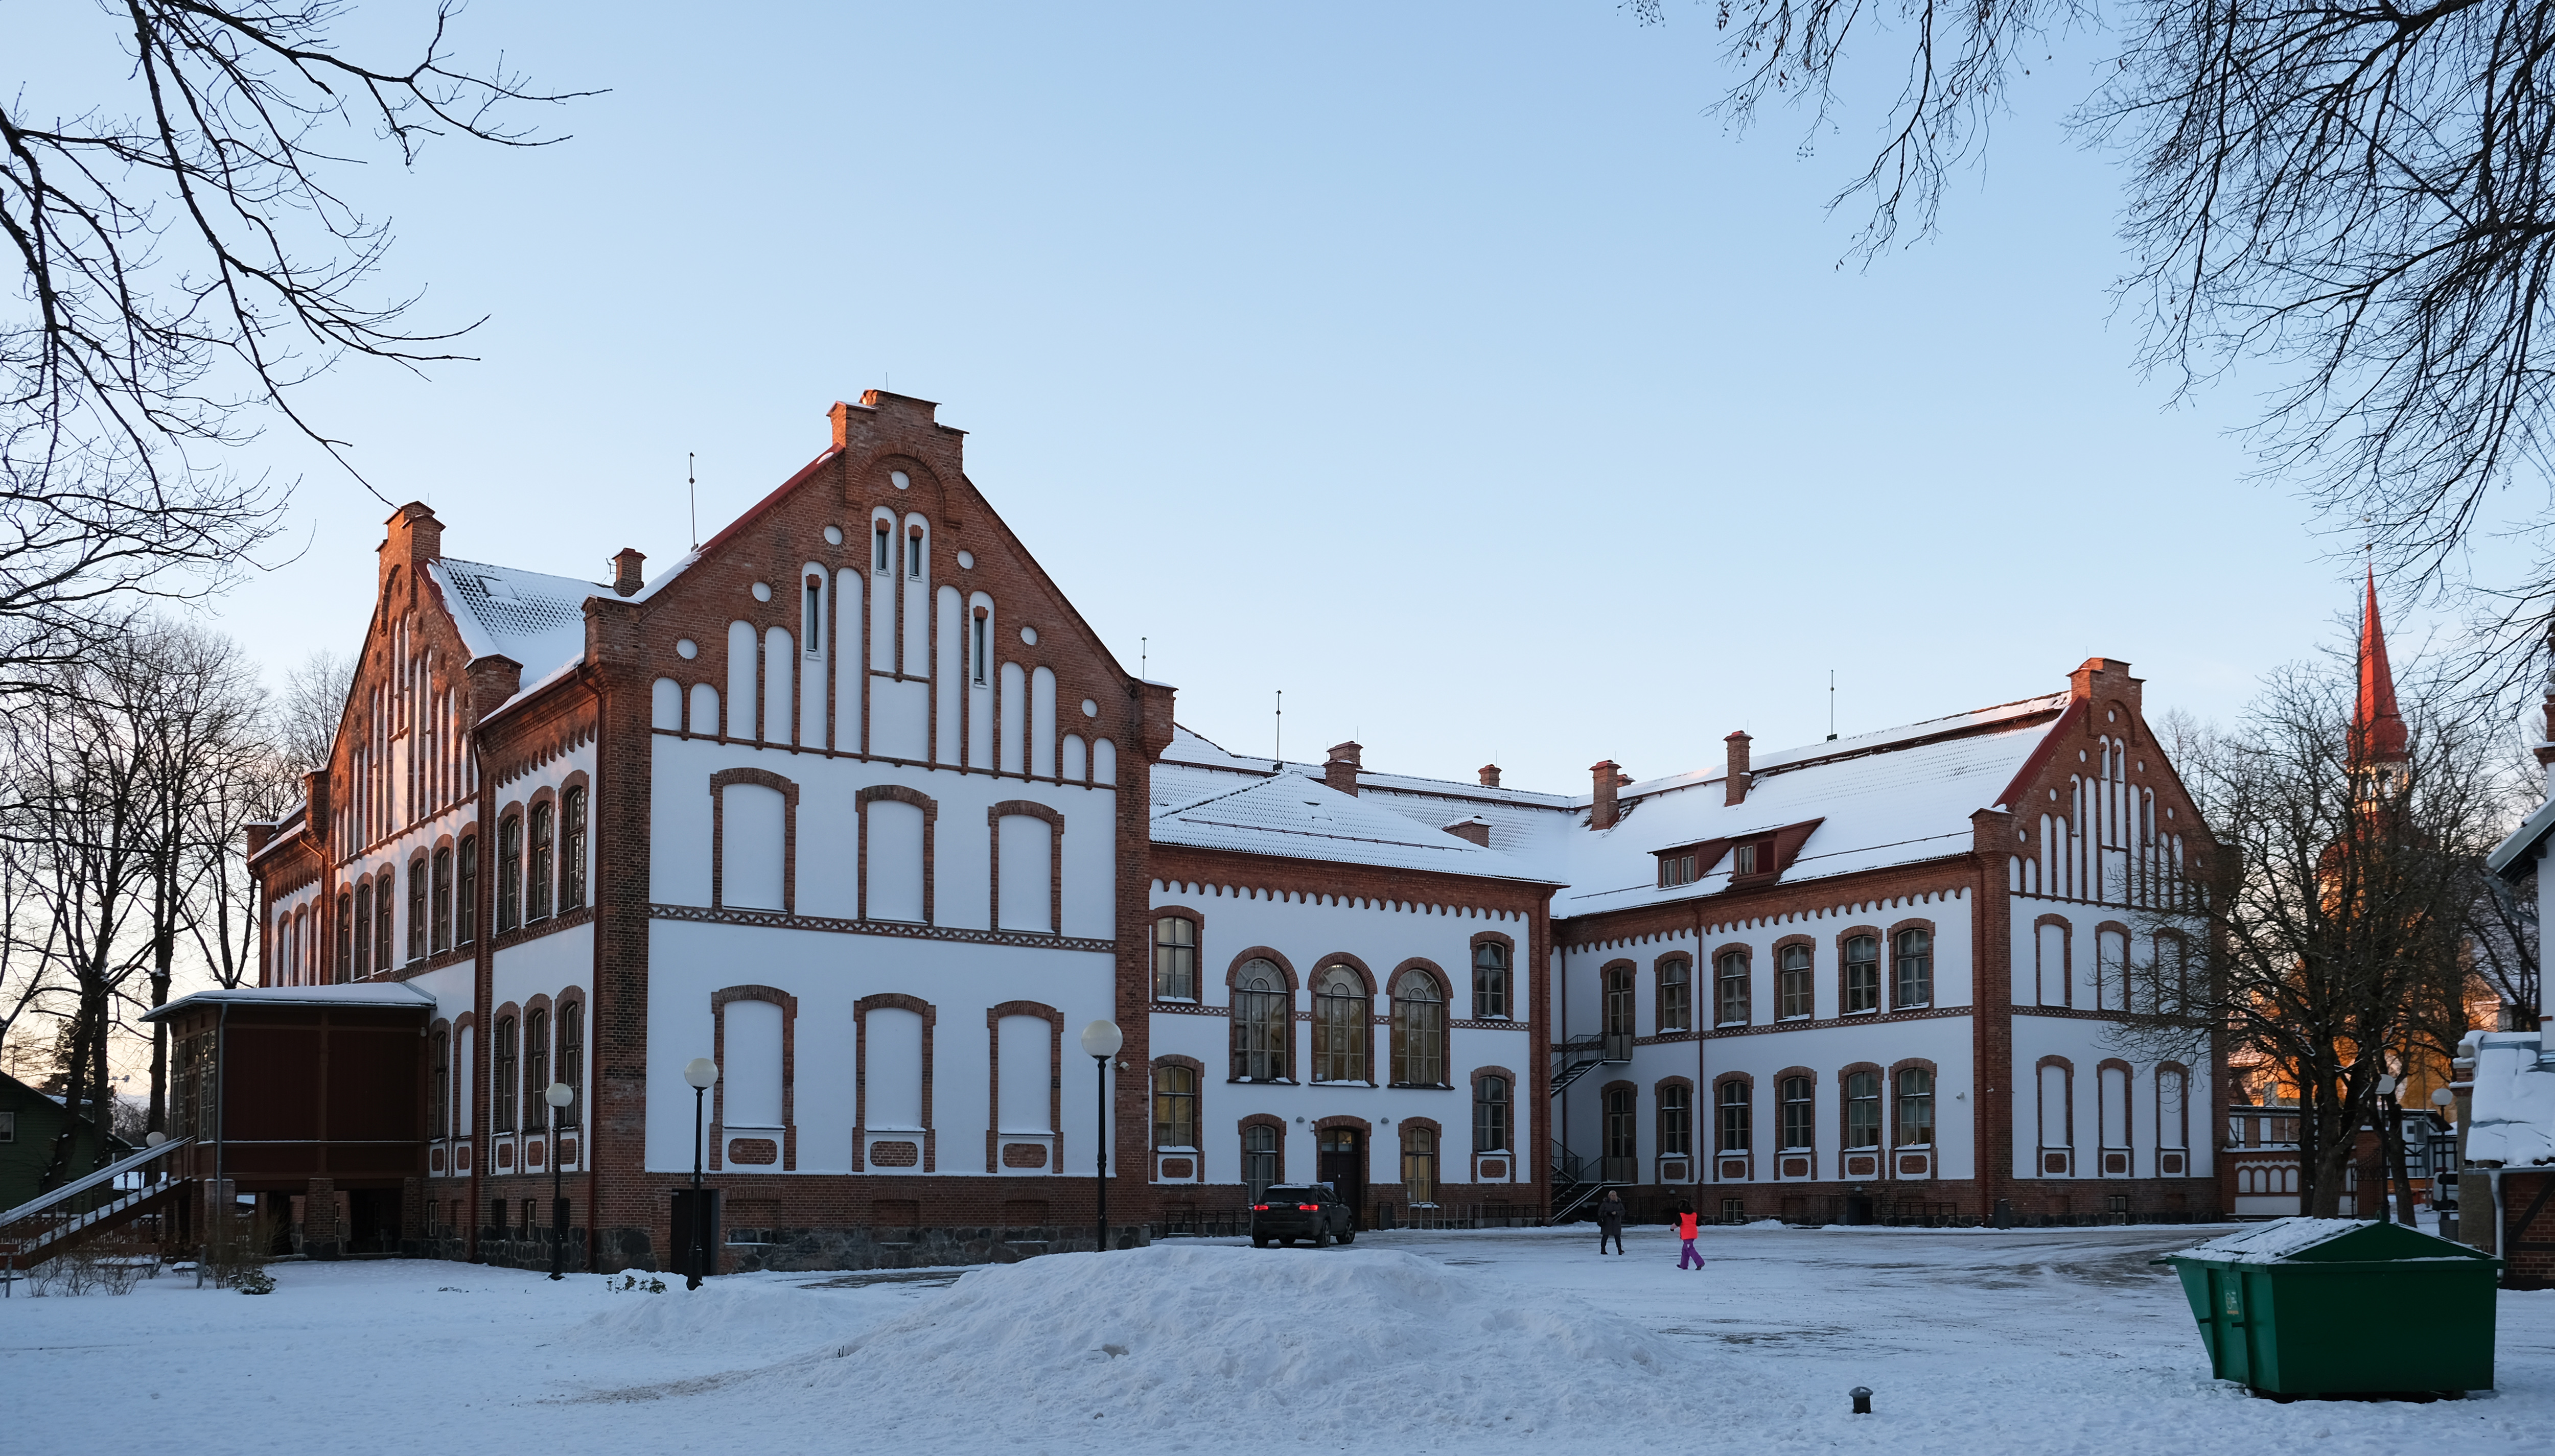 Pärnu Vanalinna Põhikool 2021 - Pärnu Old Town Elementary School